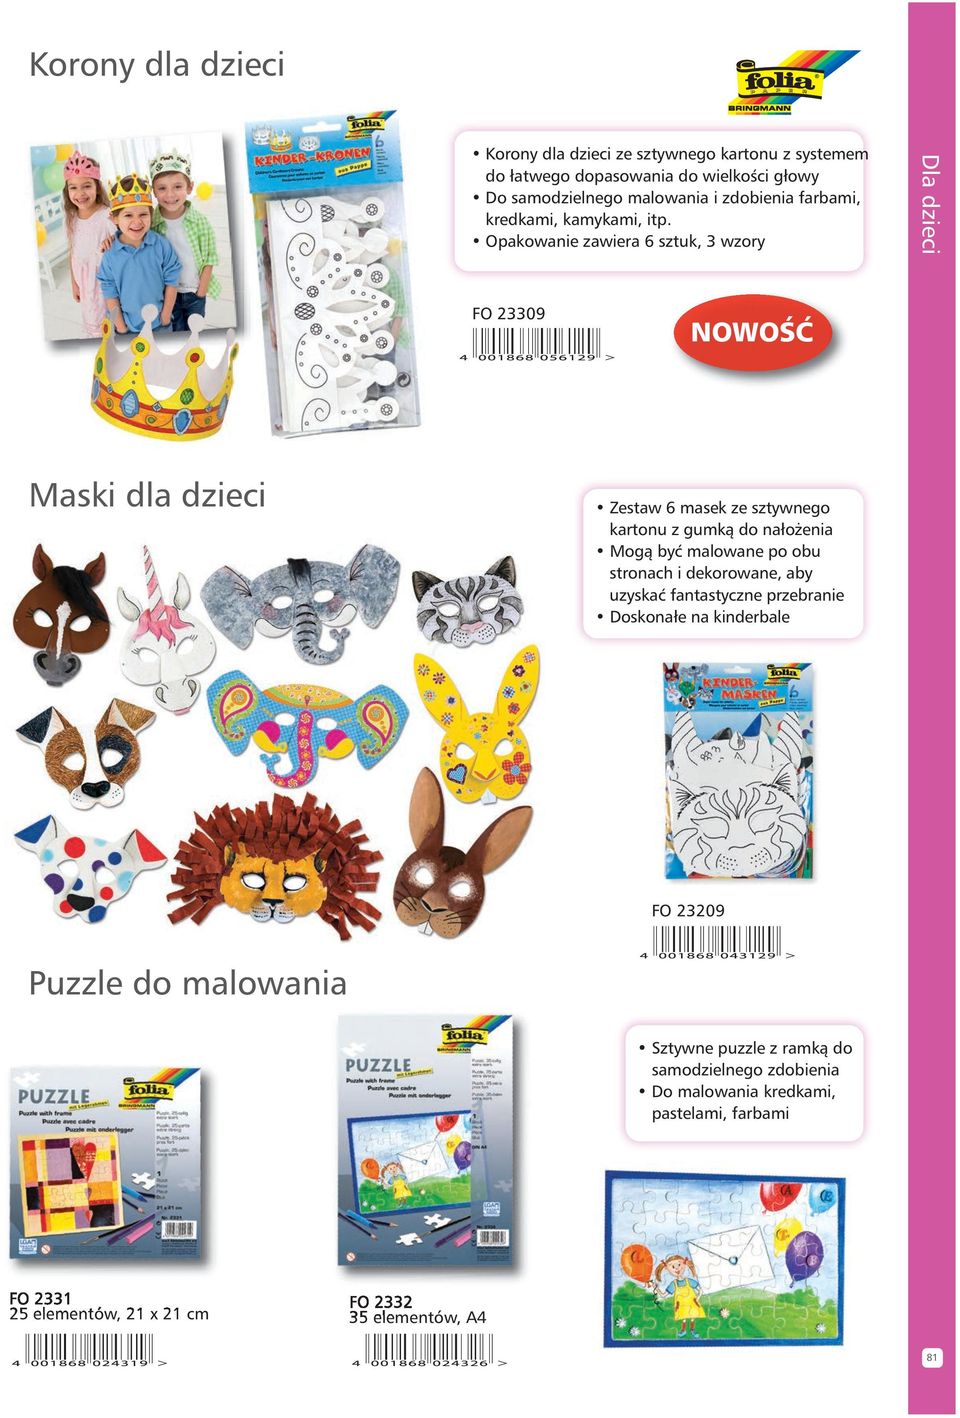 Opakowanie zawiera 6 sztuk, 3 wzory Dla dzieci FO 23309 Maski dla dzieci Zestaw 6 masek ze sztywnego kartonu z gumkà do nało enia Mogà byç malowane po